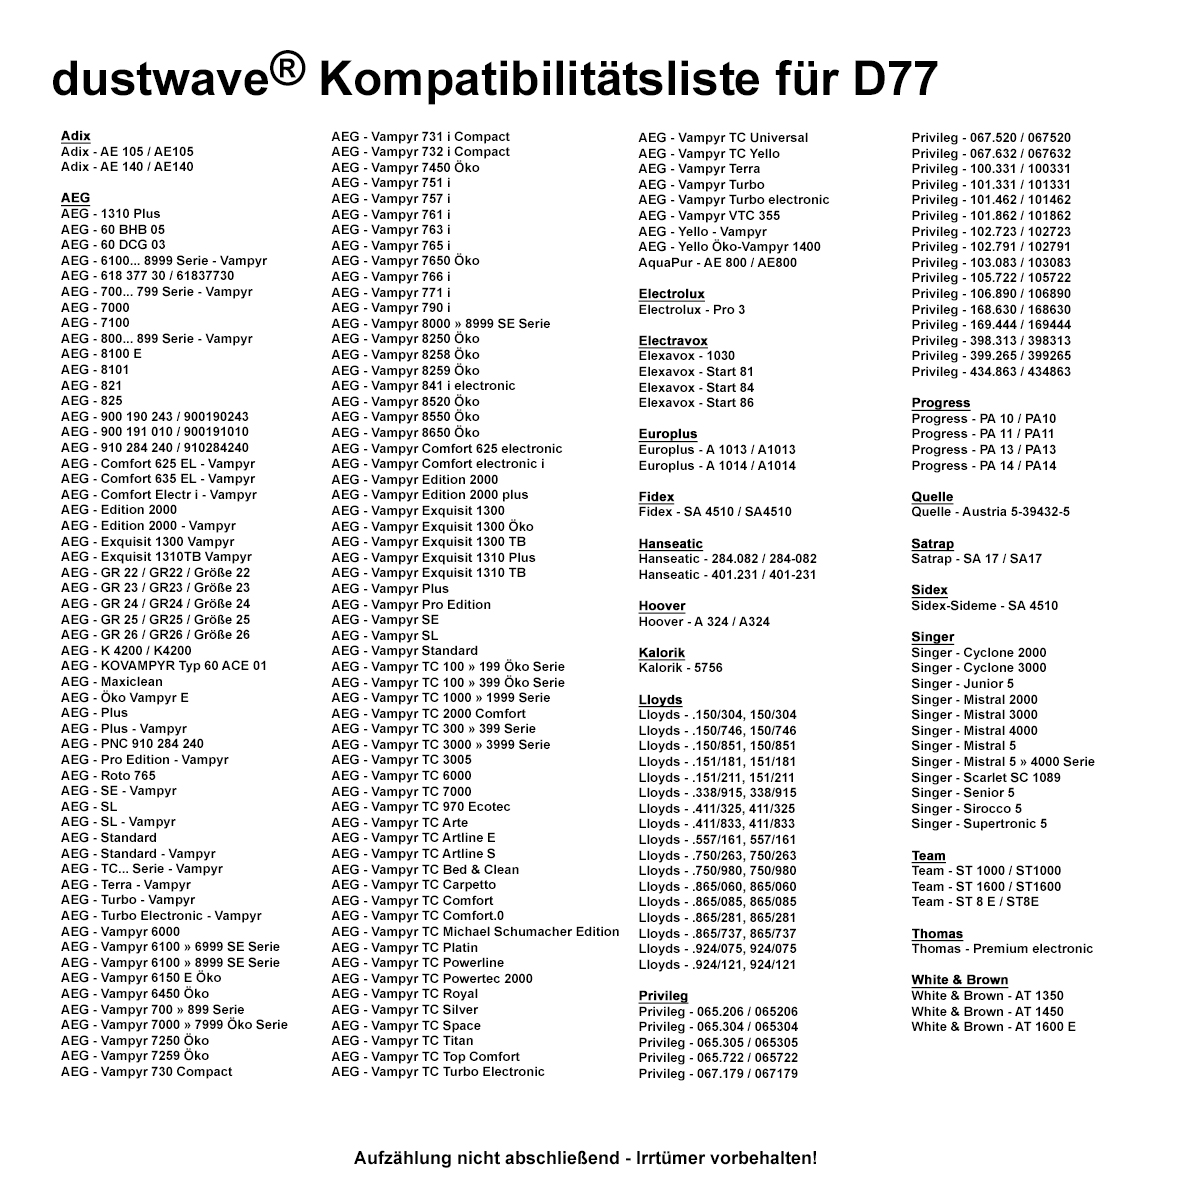 Dustwave® 20 Staubsaugerbeutel für AEG Vampyr 6209 Electronic - hocheffizient, mehrlagiges Mikrovlies mit Hygieneverschluss - Made in Germany